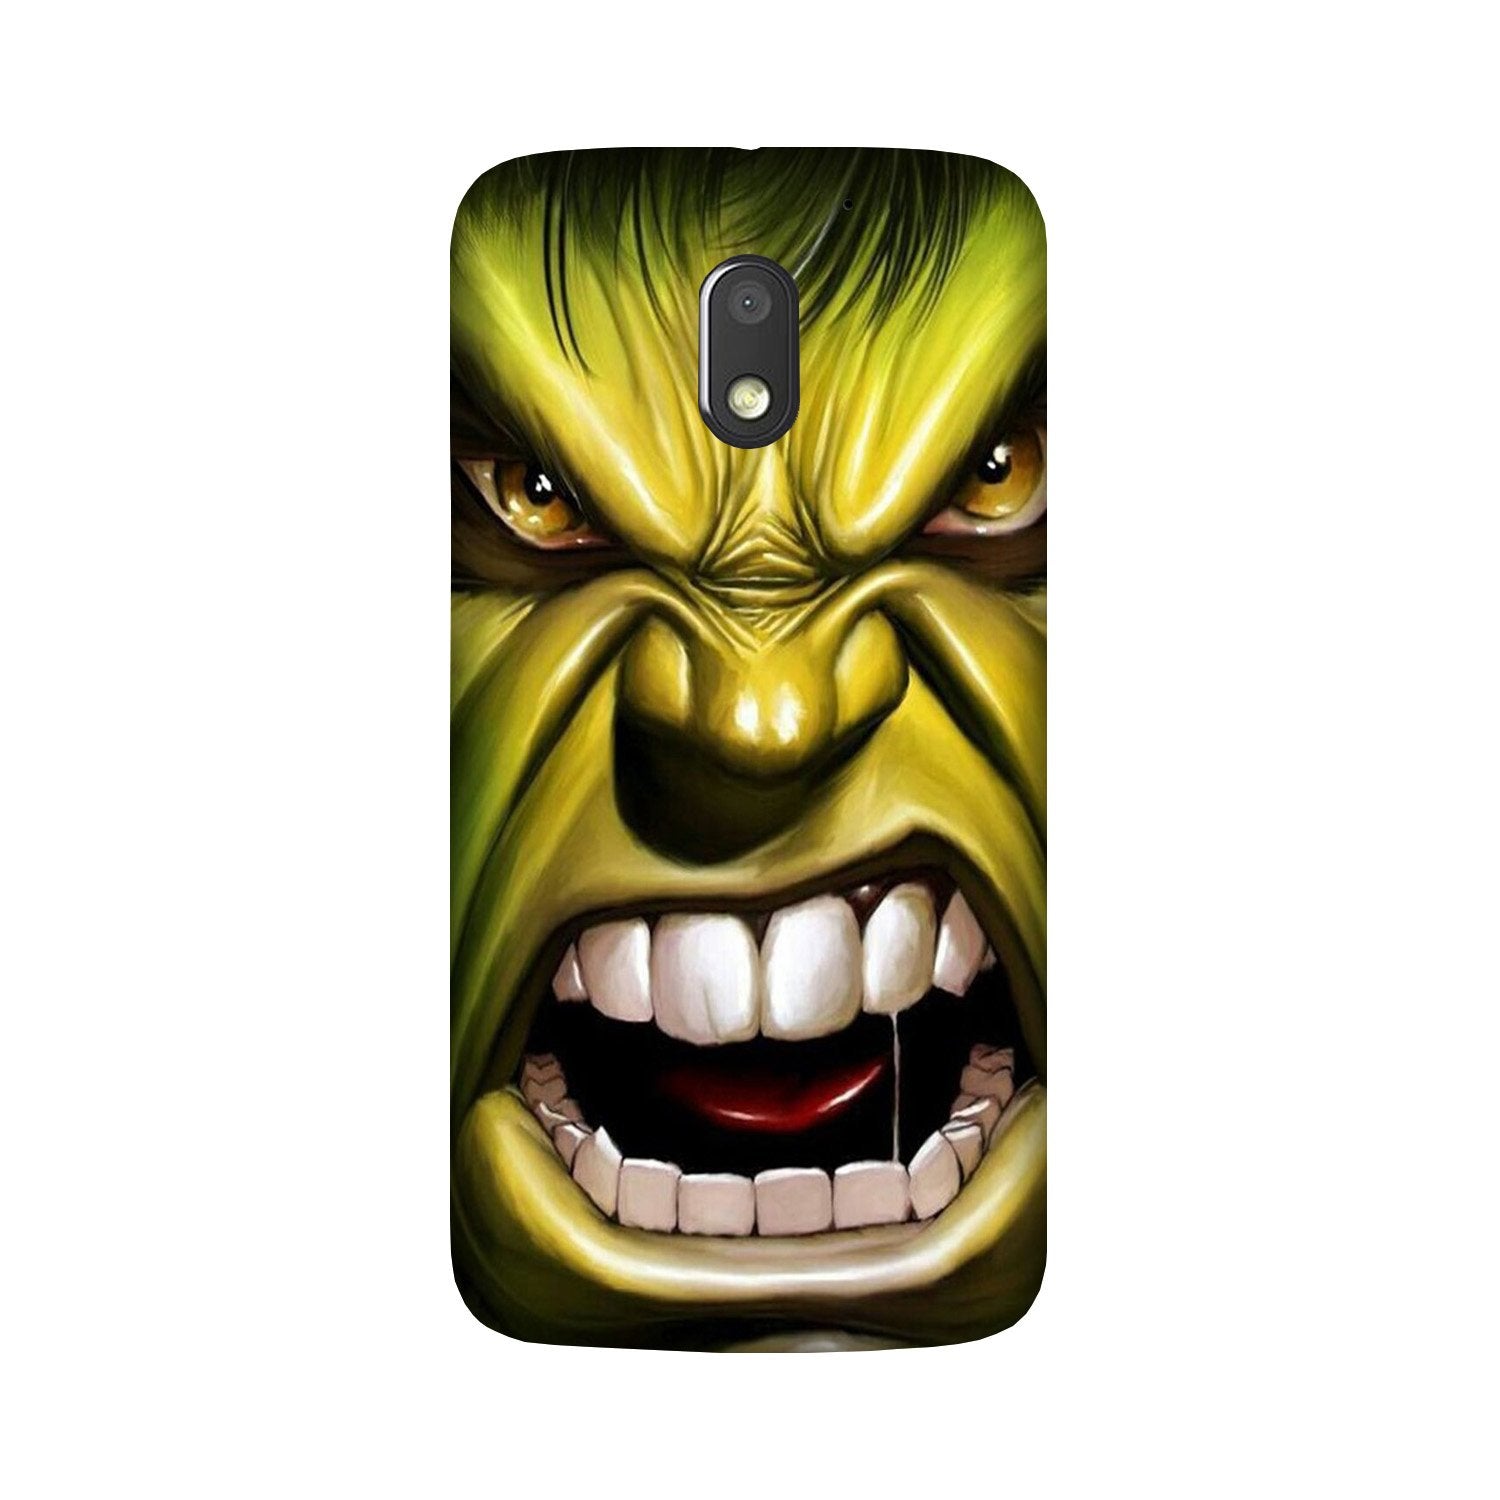 Hulk Superhero Case for Moto G4 Play(Design - 121)